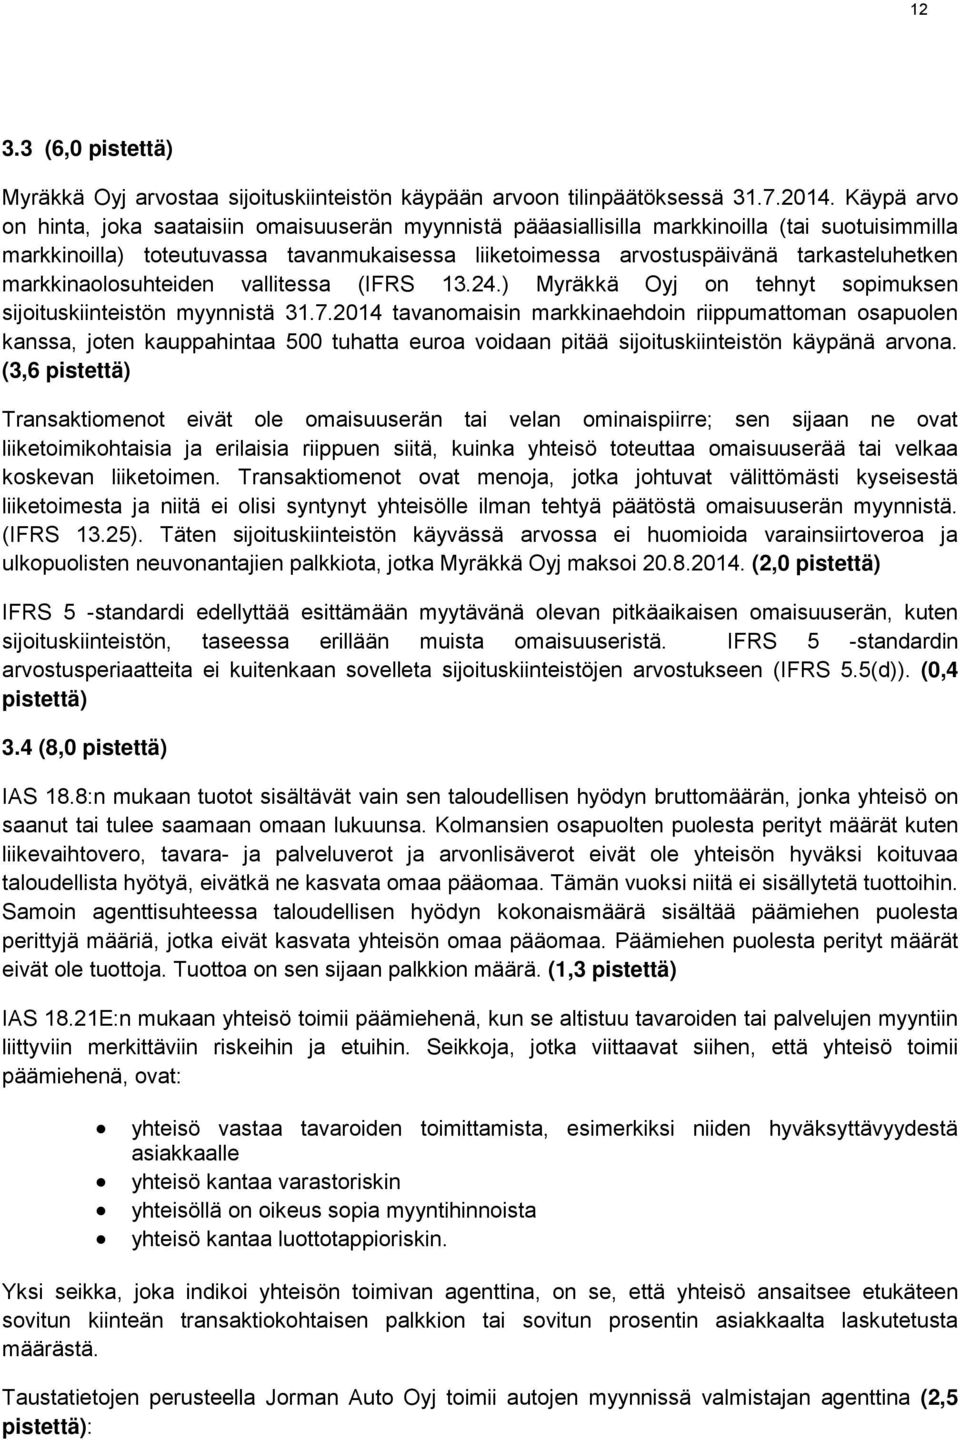 markkinaolosuhteiden vallitessa (IFRS 13.24.) Myräkkä Oyj on tehnyt sopimuksen sijoituskiinteistön myynnistä 31.7.